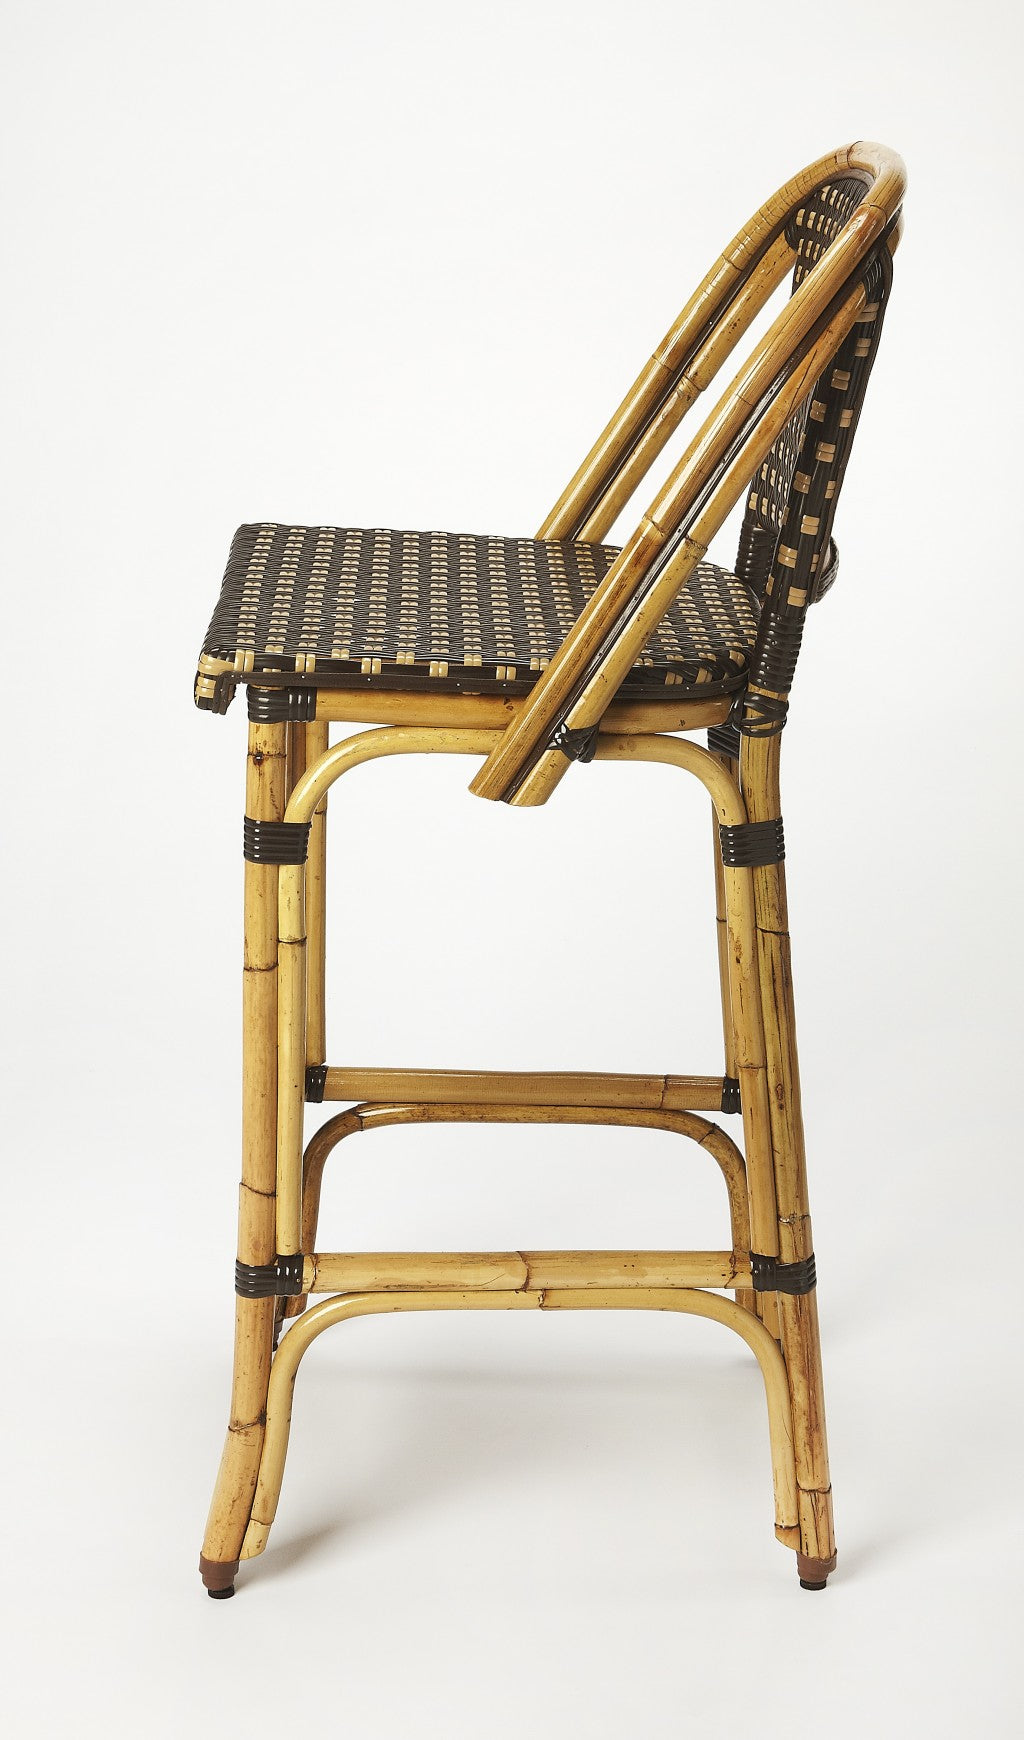 28" Brown Bar Chair